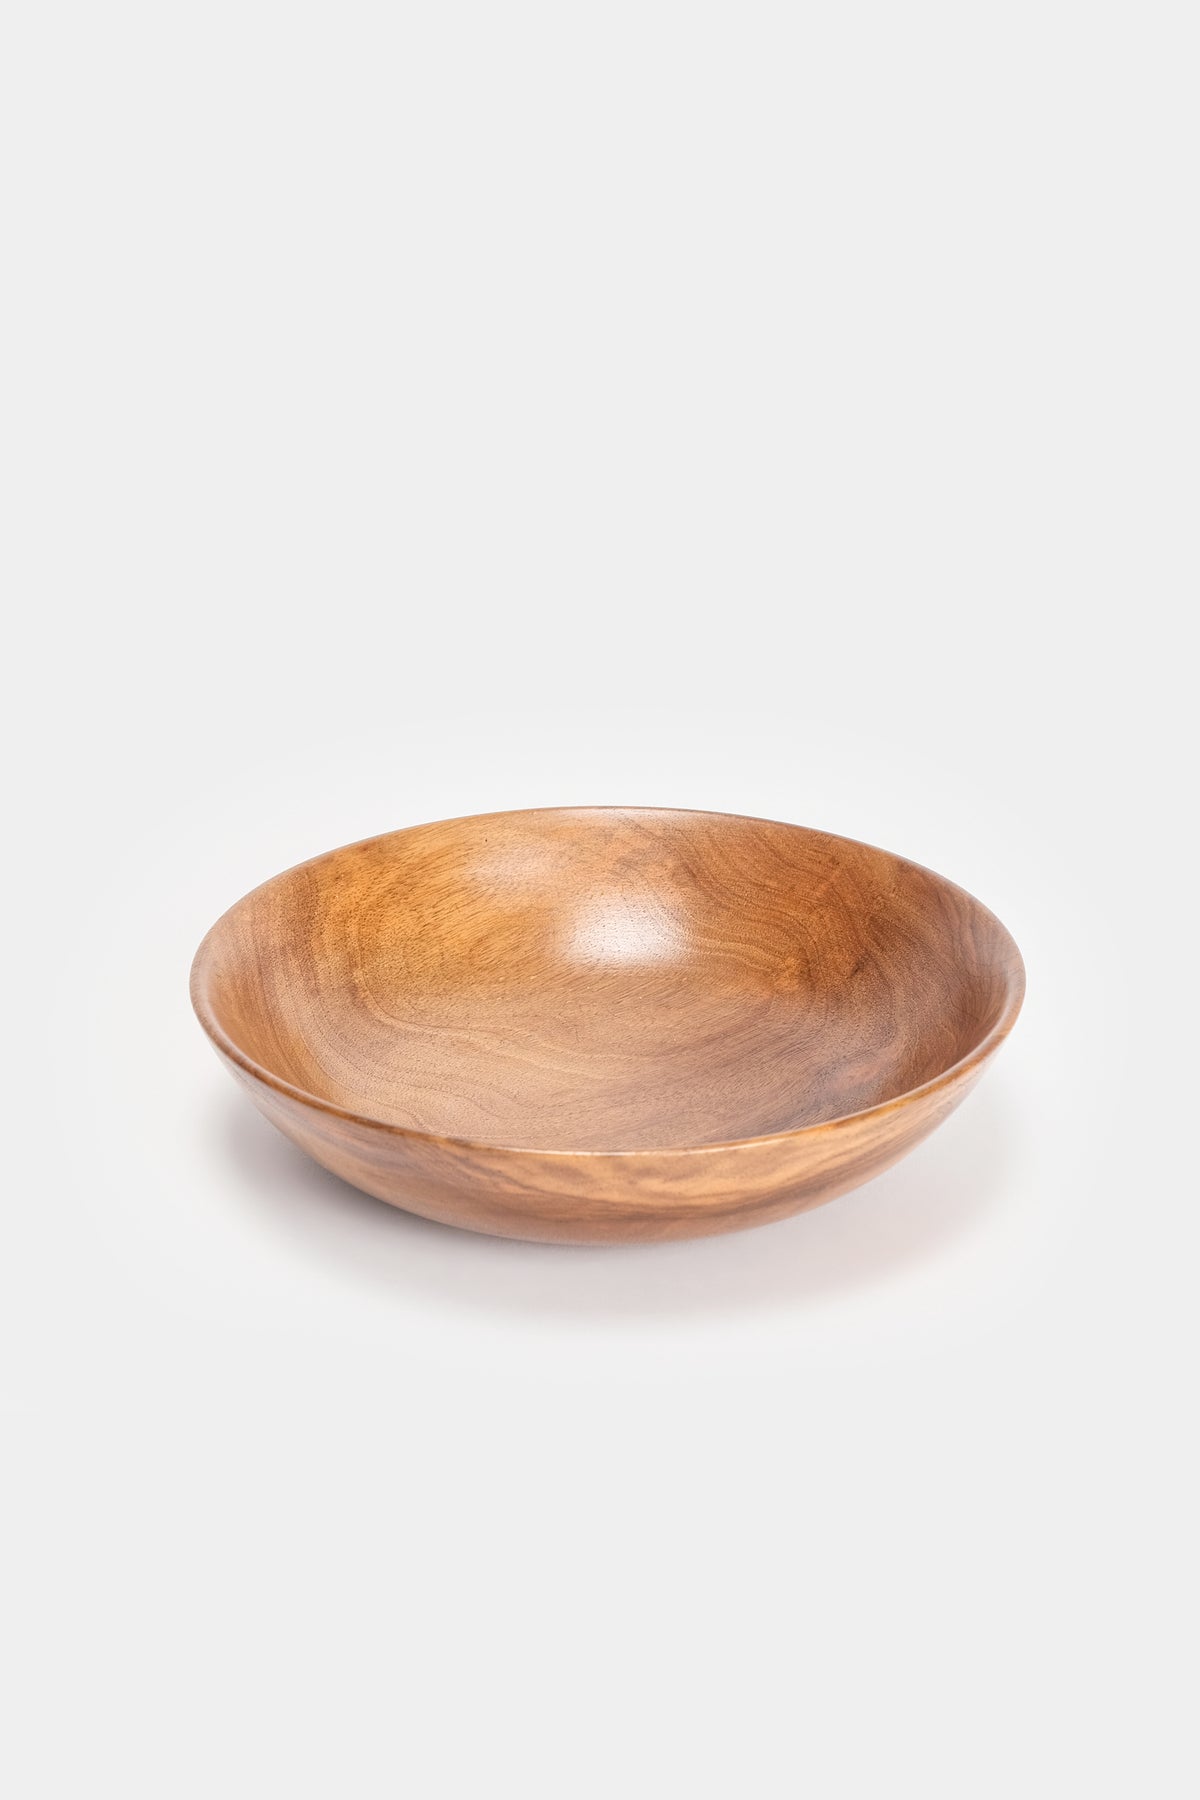 Swiss, walnut bowl, 30s